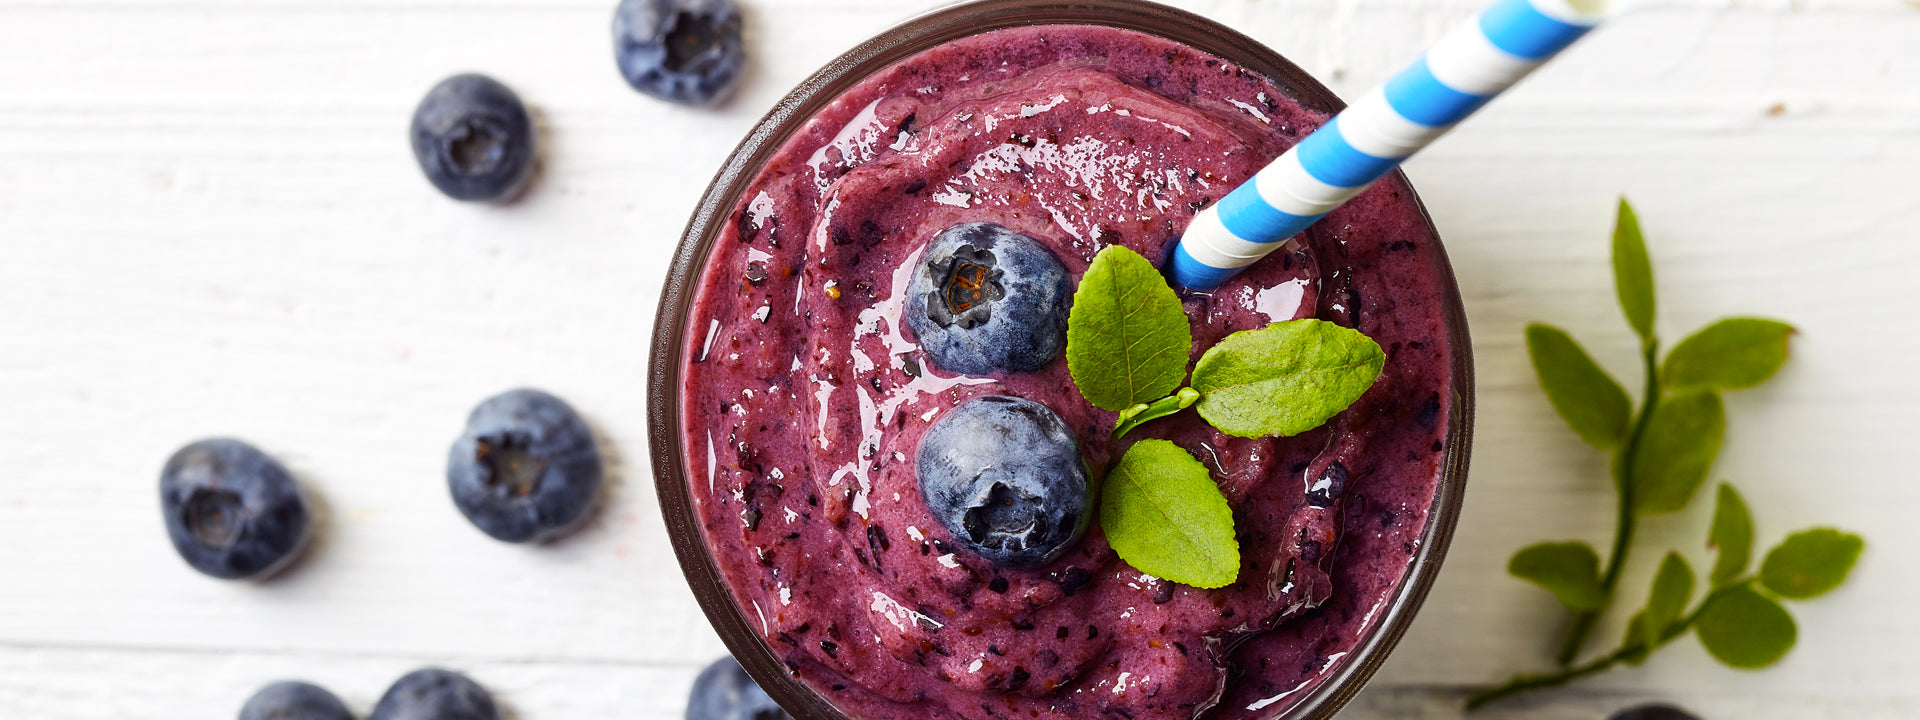 Recipe: Blueberry and Kiwifruit Smoothie Awesomeness!